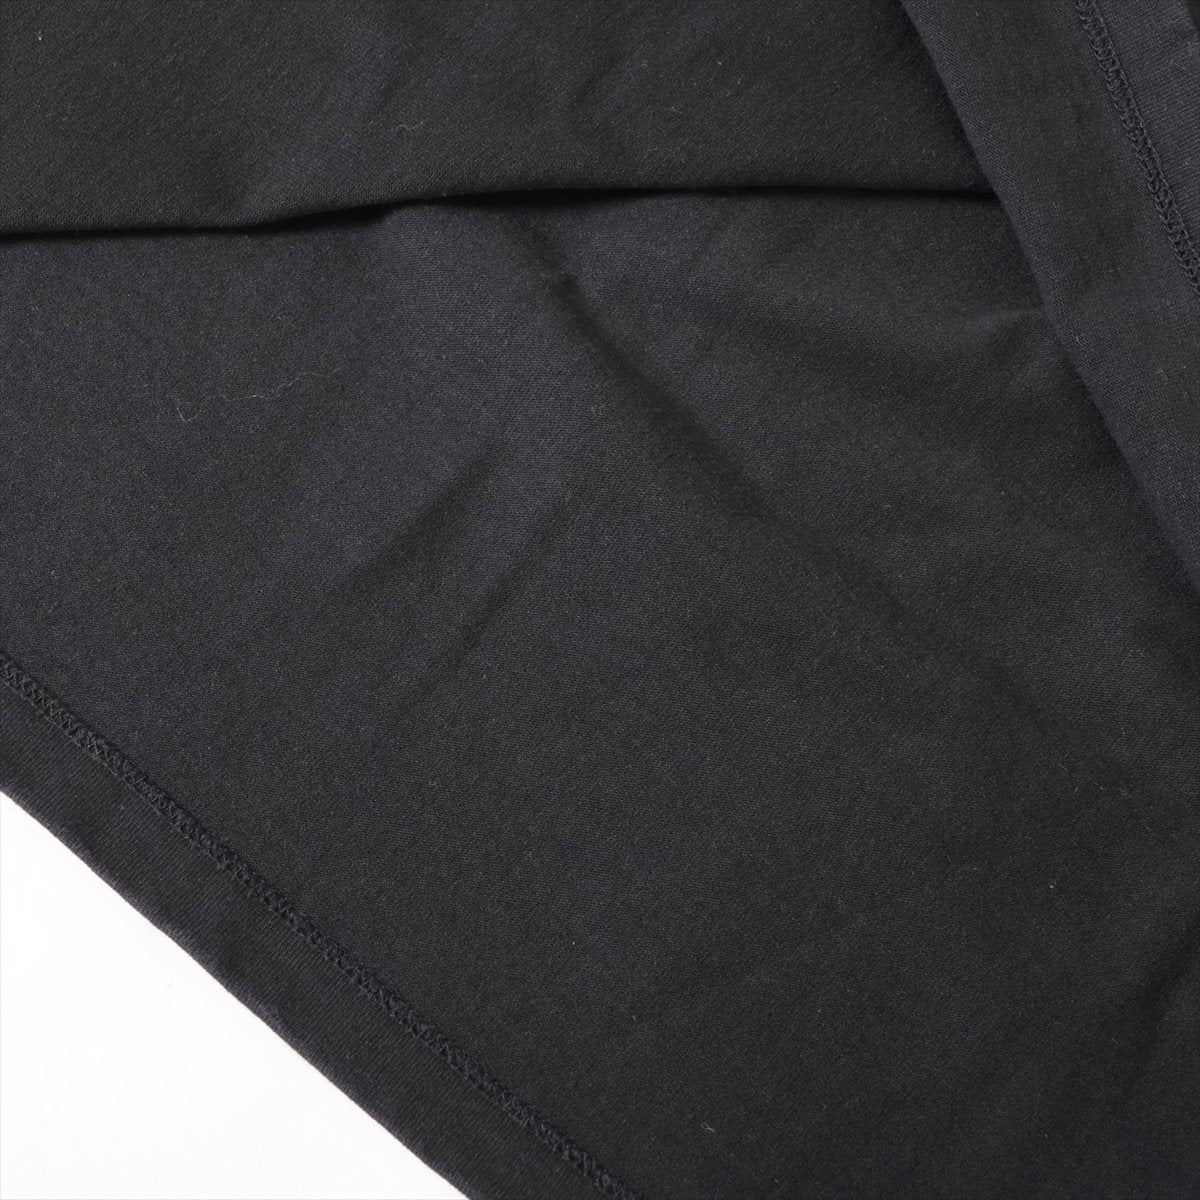 ジルサンダー コットン×ポリエステル Tシャツ L メンズ ブラック  JSMQ707017 ステッチ スレあり